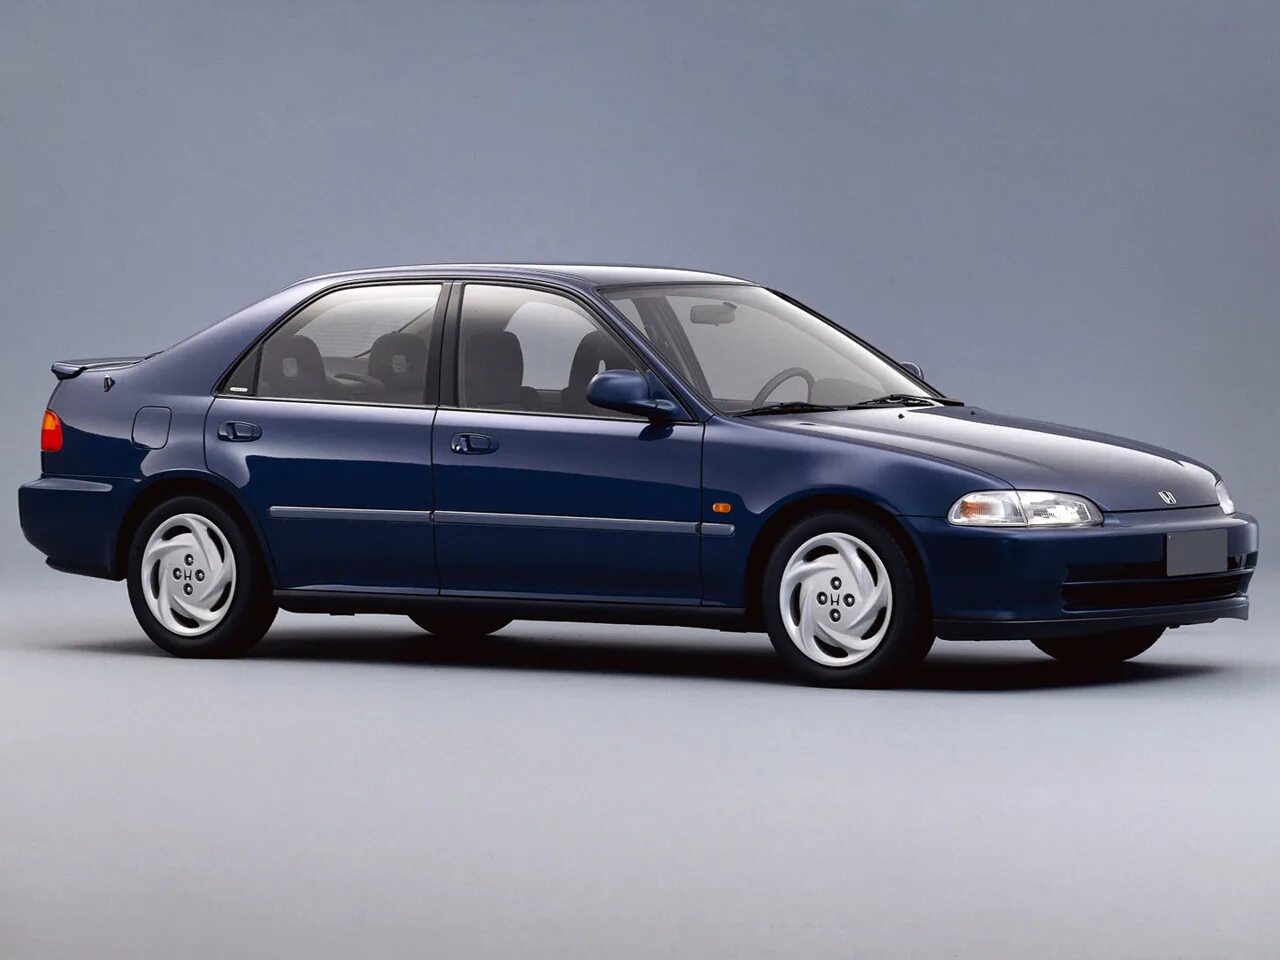 Honda Civic 5 седан. Honda Civic 1995 EG. Honda Civic 5 поколение седан. Honda Civic Ferio 5 поколение. Цивик 5 поколение